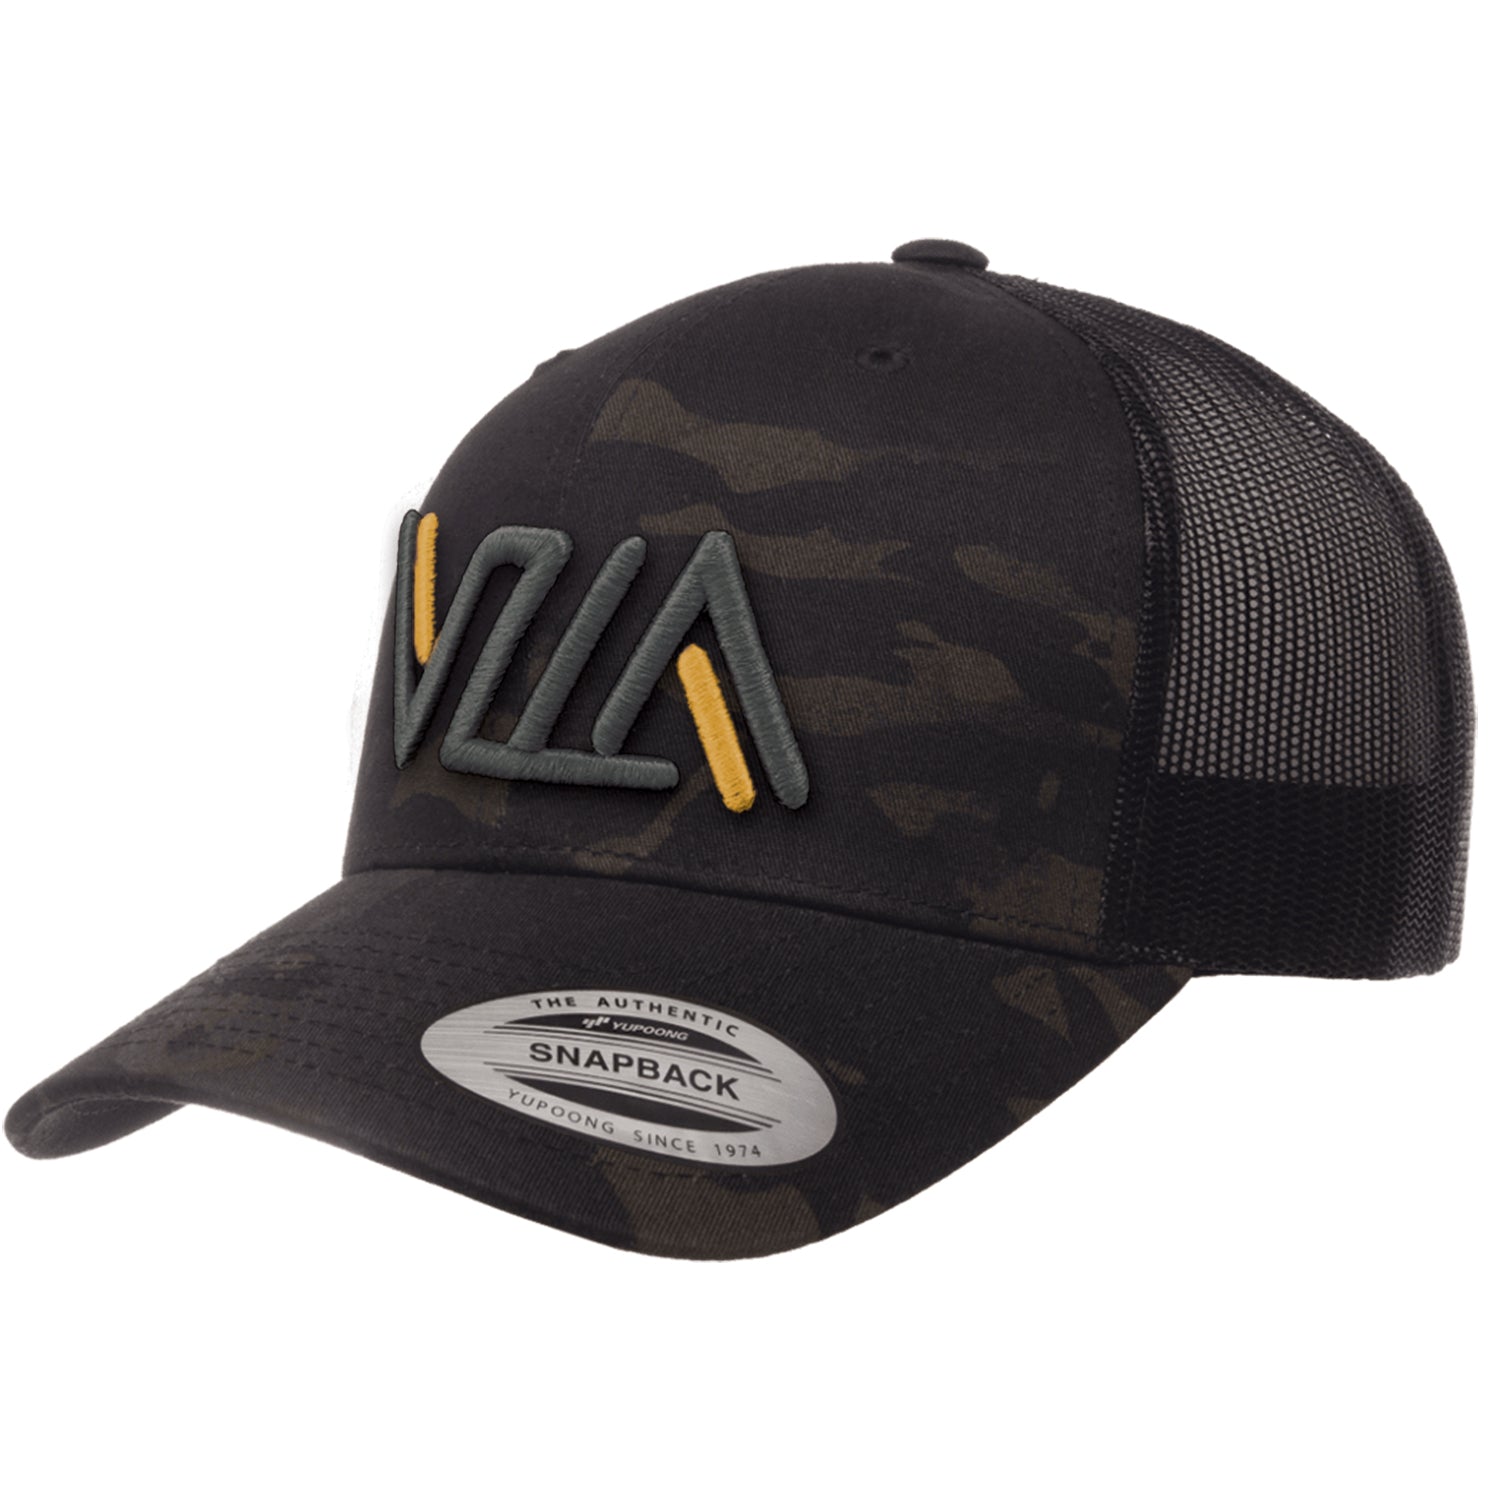 VZLA Dark Camo Trucker Hat